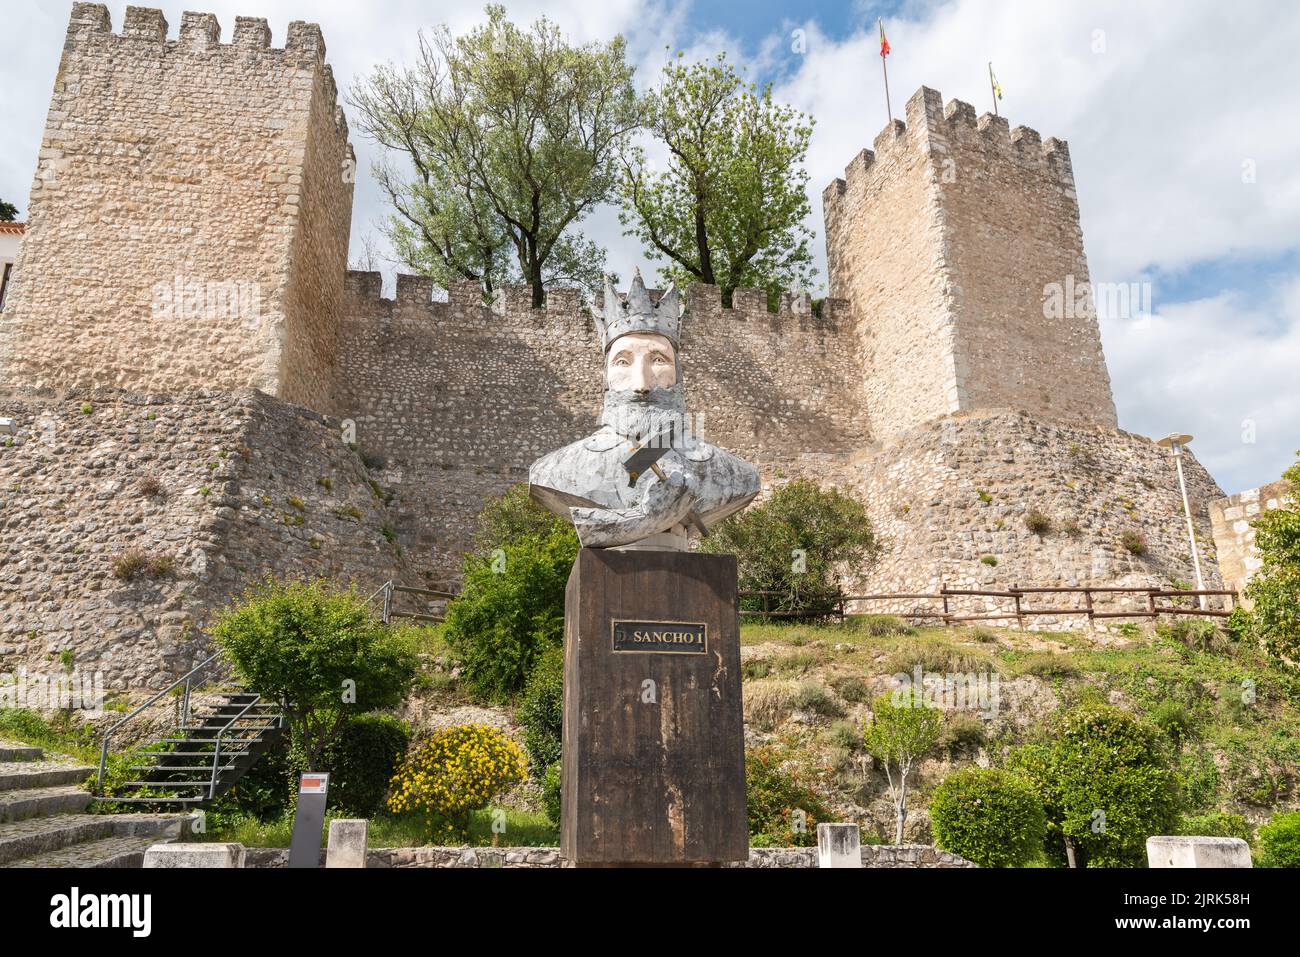 Die Statue von D. Sancho I vor dem Schloss Torres Novas in Sines, Portugal. Stockfoto